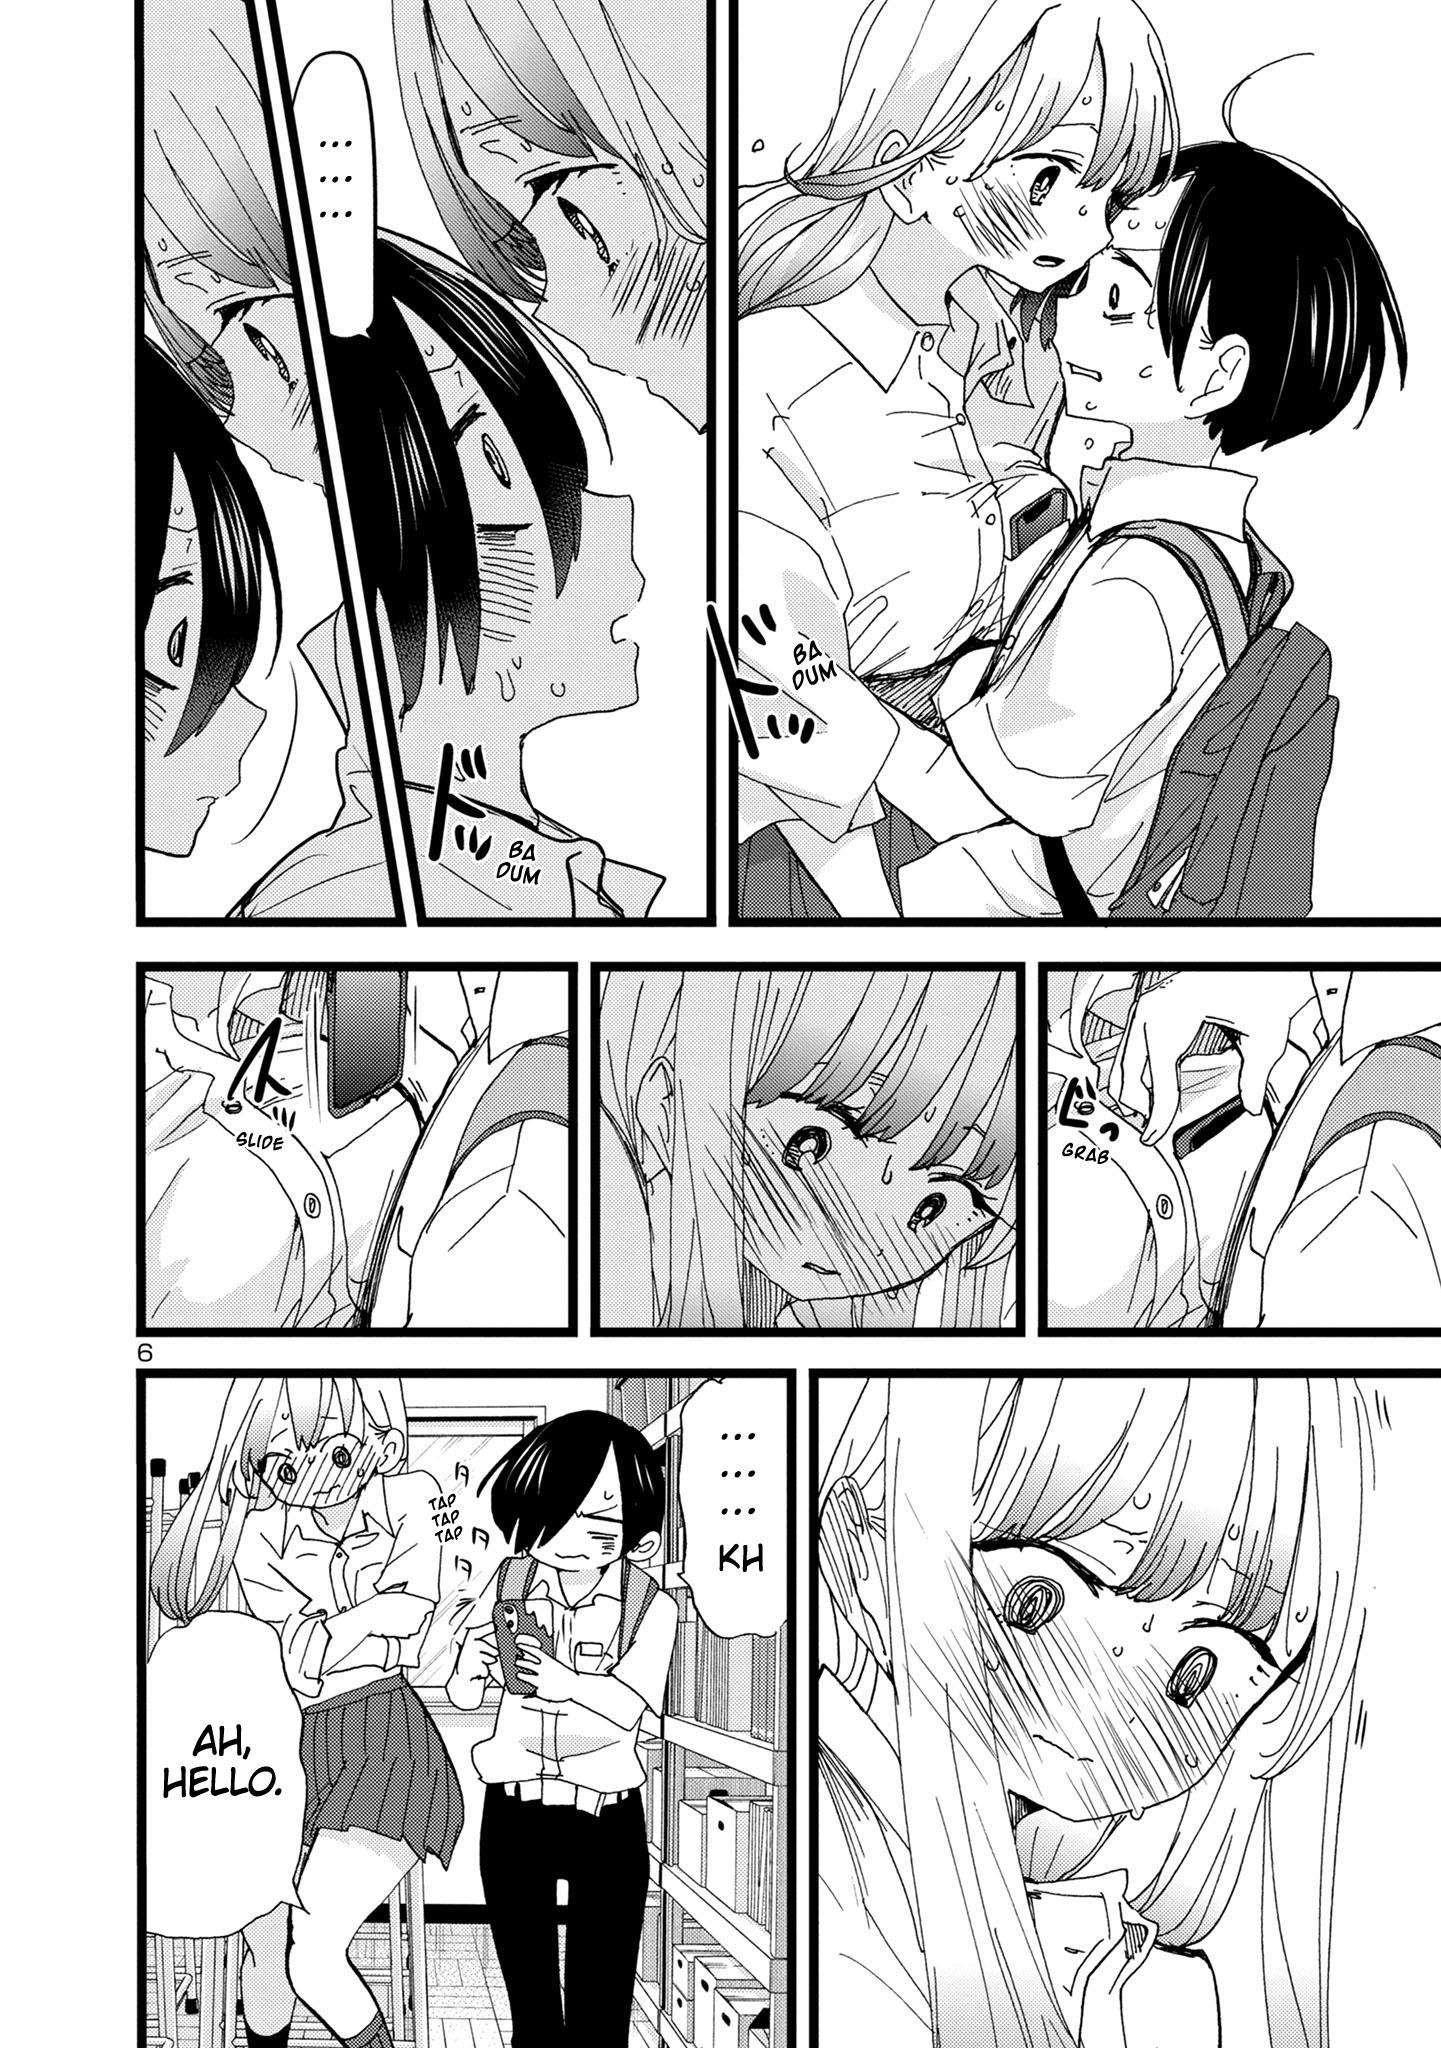 Boku no Kokoro no Yabai Yatsu Ch.81 Page 1 - Mangago